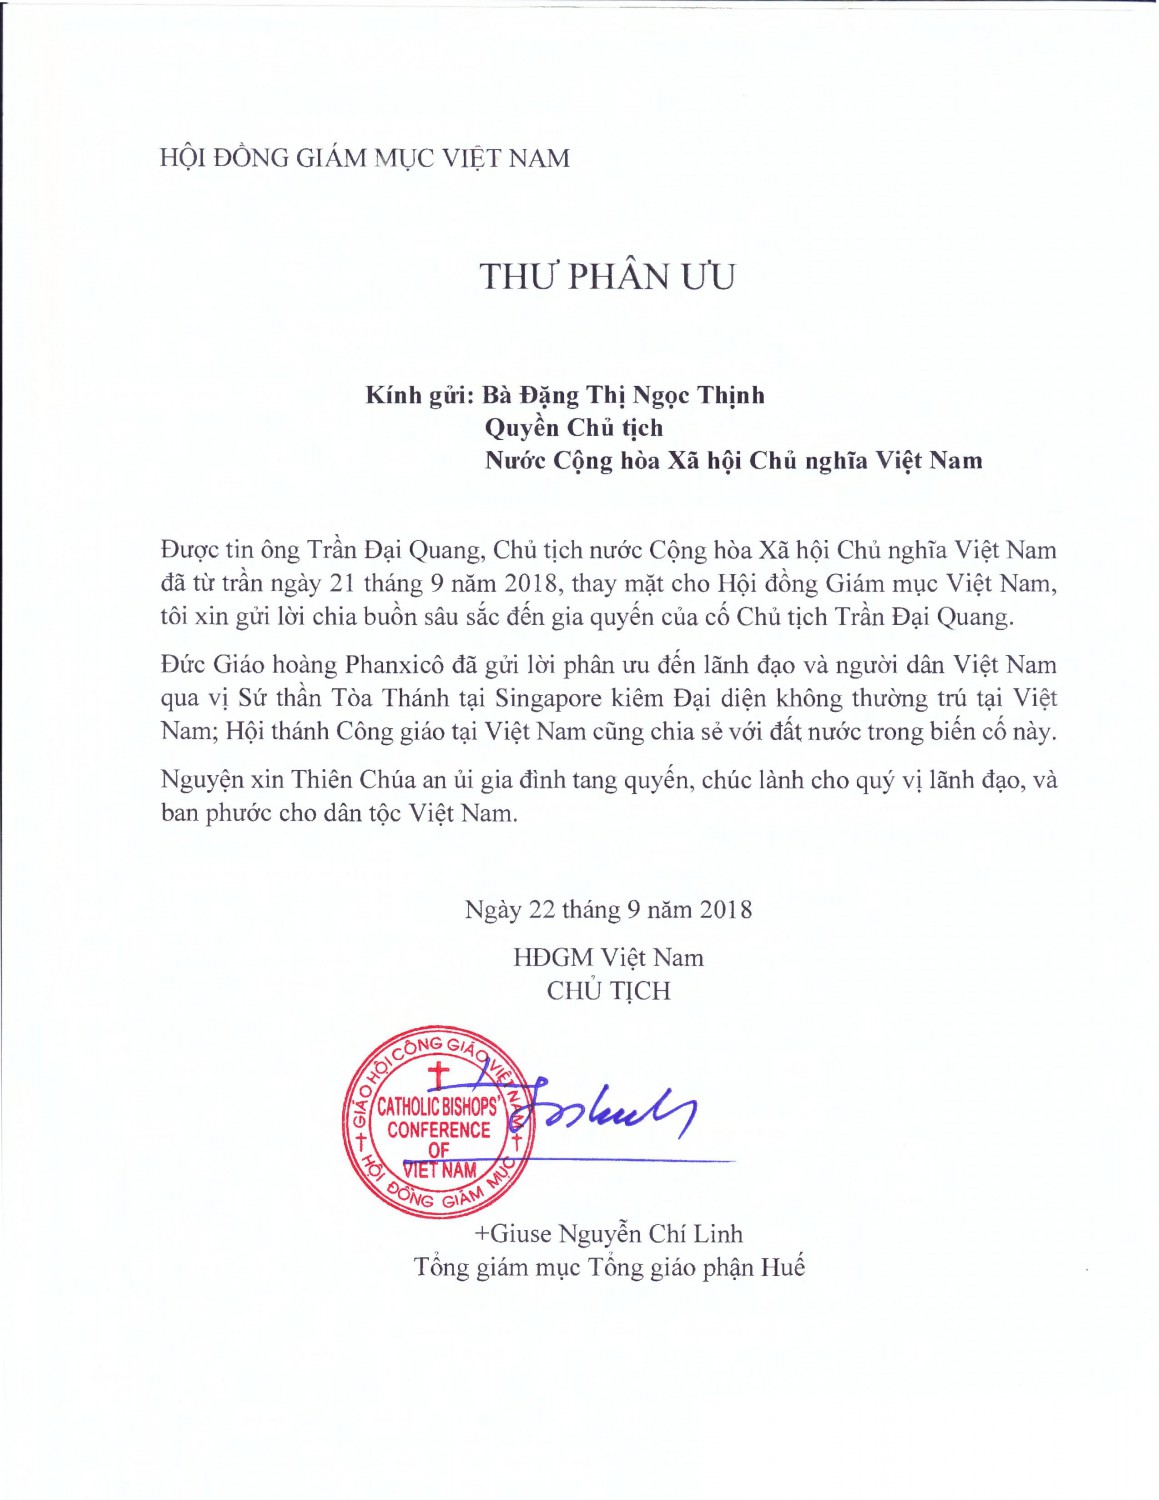 Thu Phan Uu